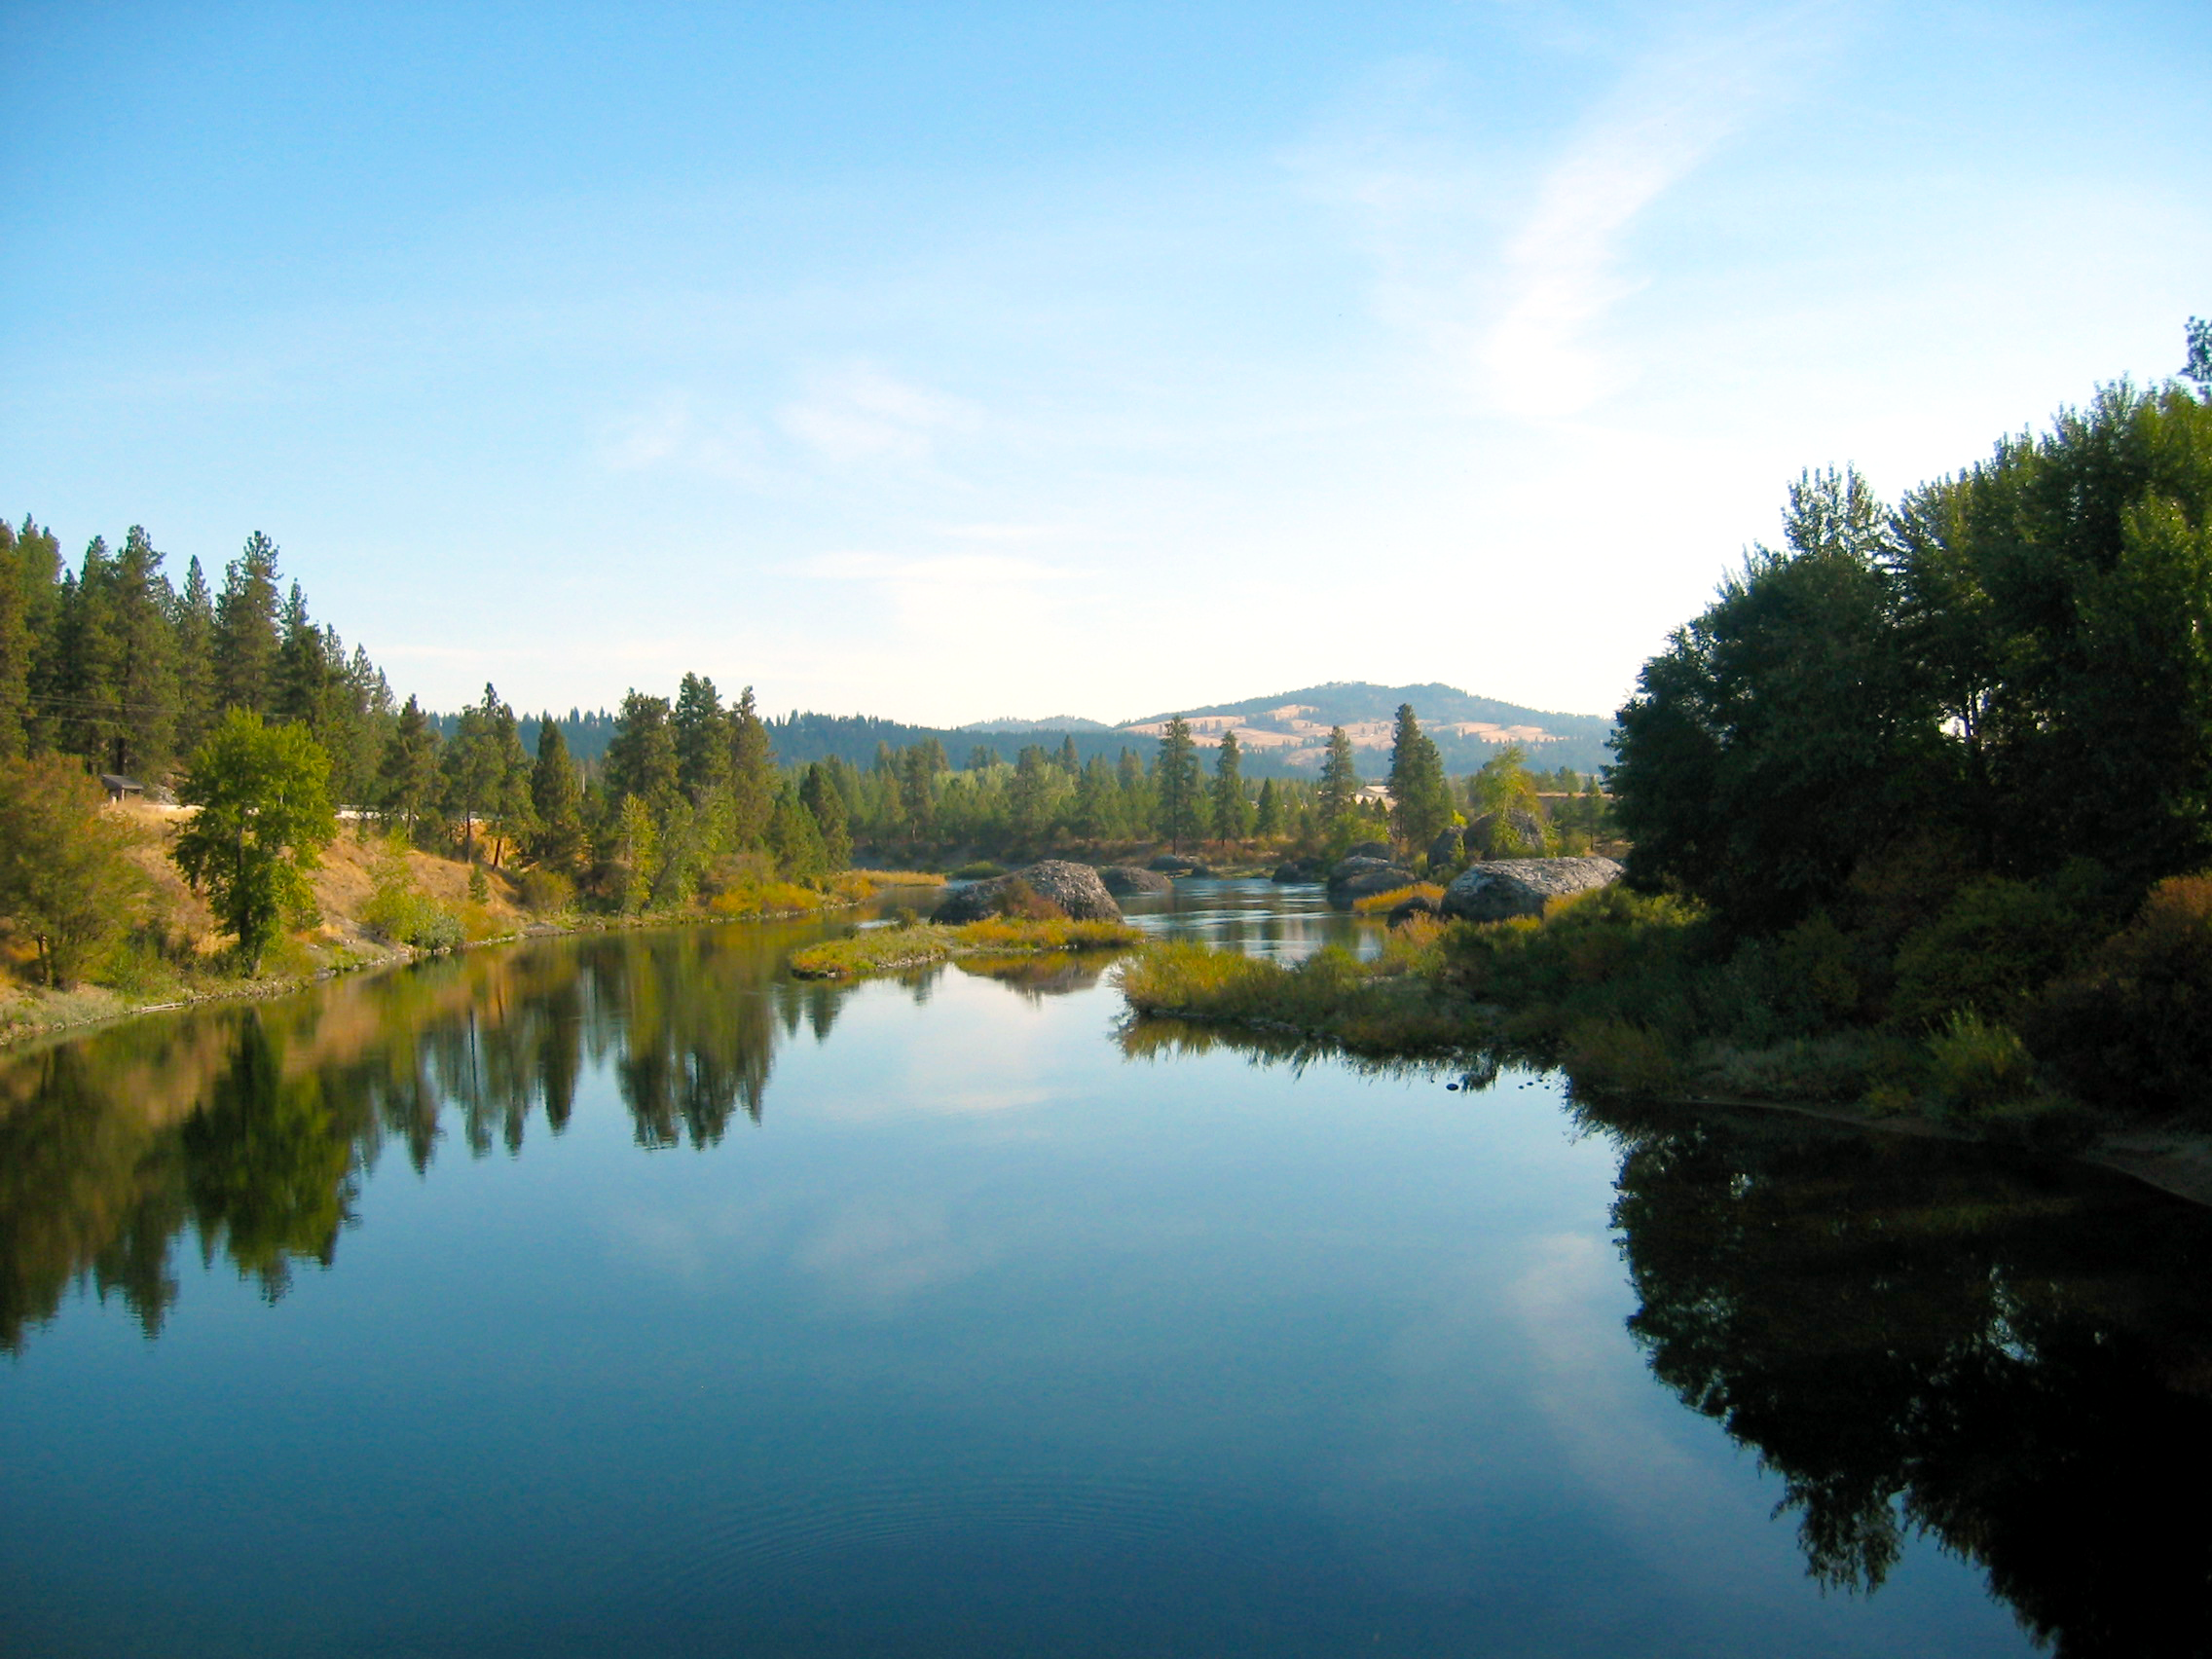 Spokane Rivers | Fishing, Kayaking, Canoeing & Water Trails